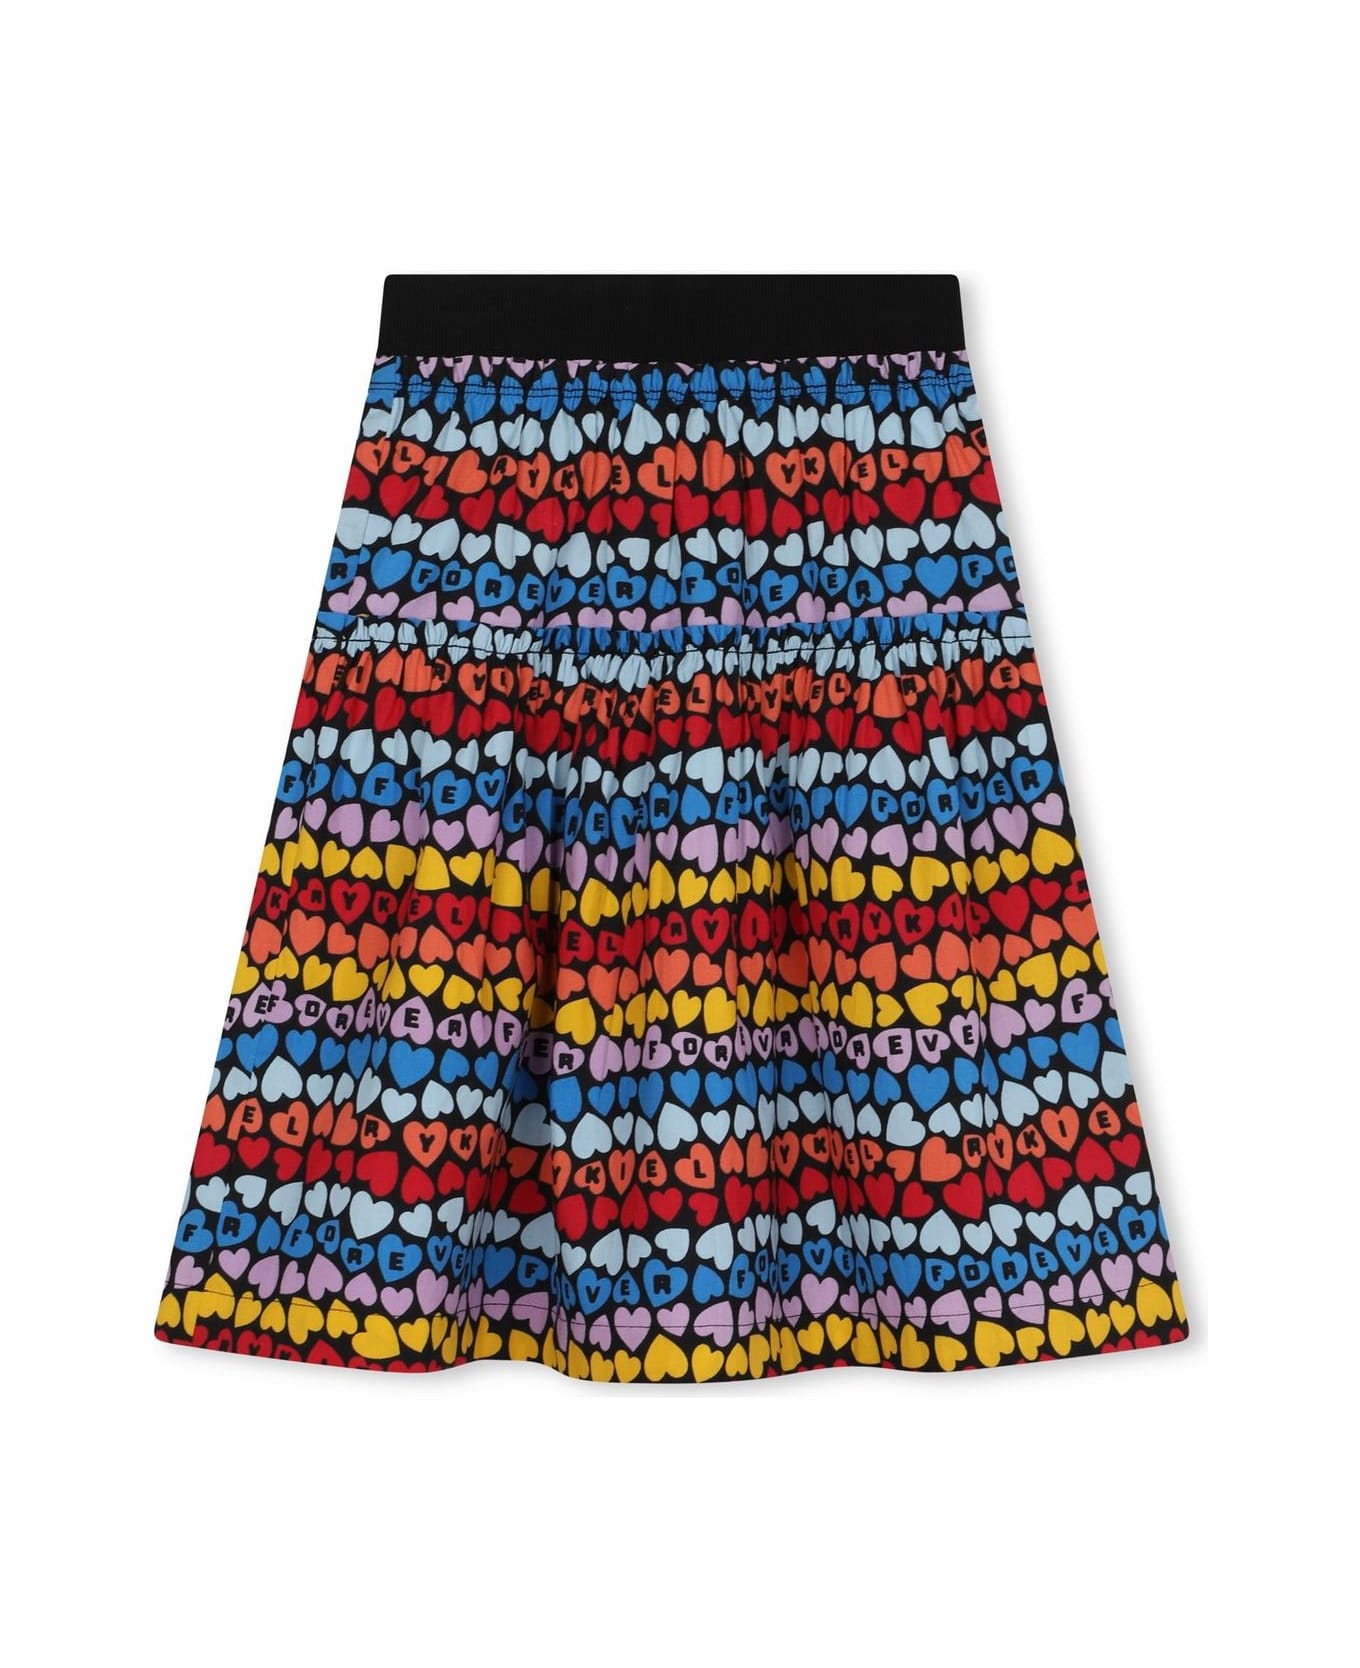 Sonia Rykiel Skirt With Flounces - Multicolor